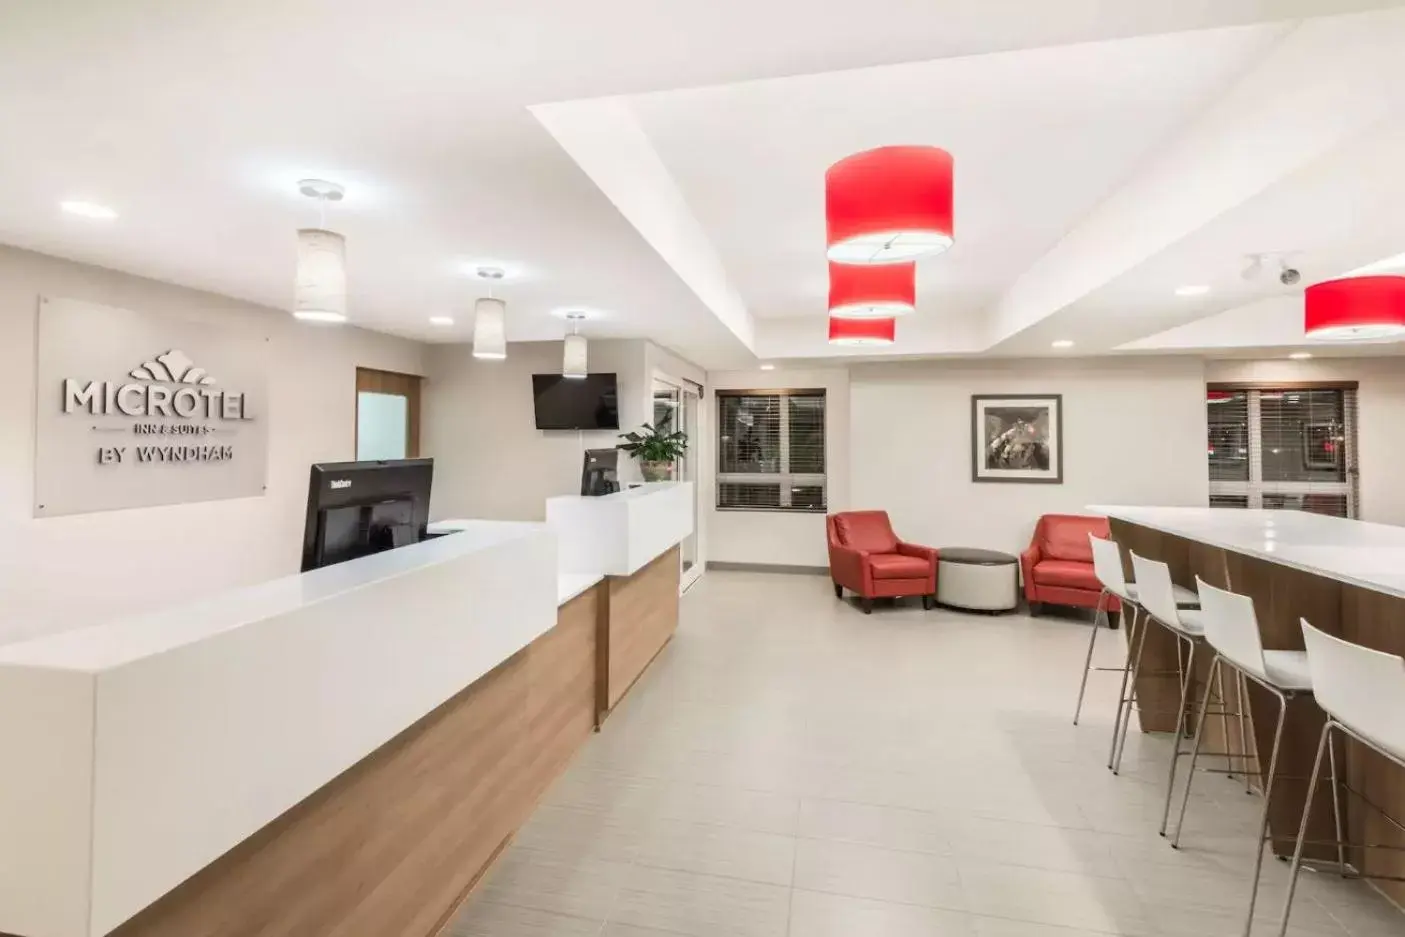 Lobby or reception, Lobby/Reception in Microtel Inn & Suites by Wyndham Sudbury